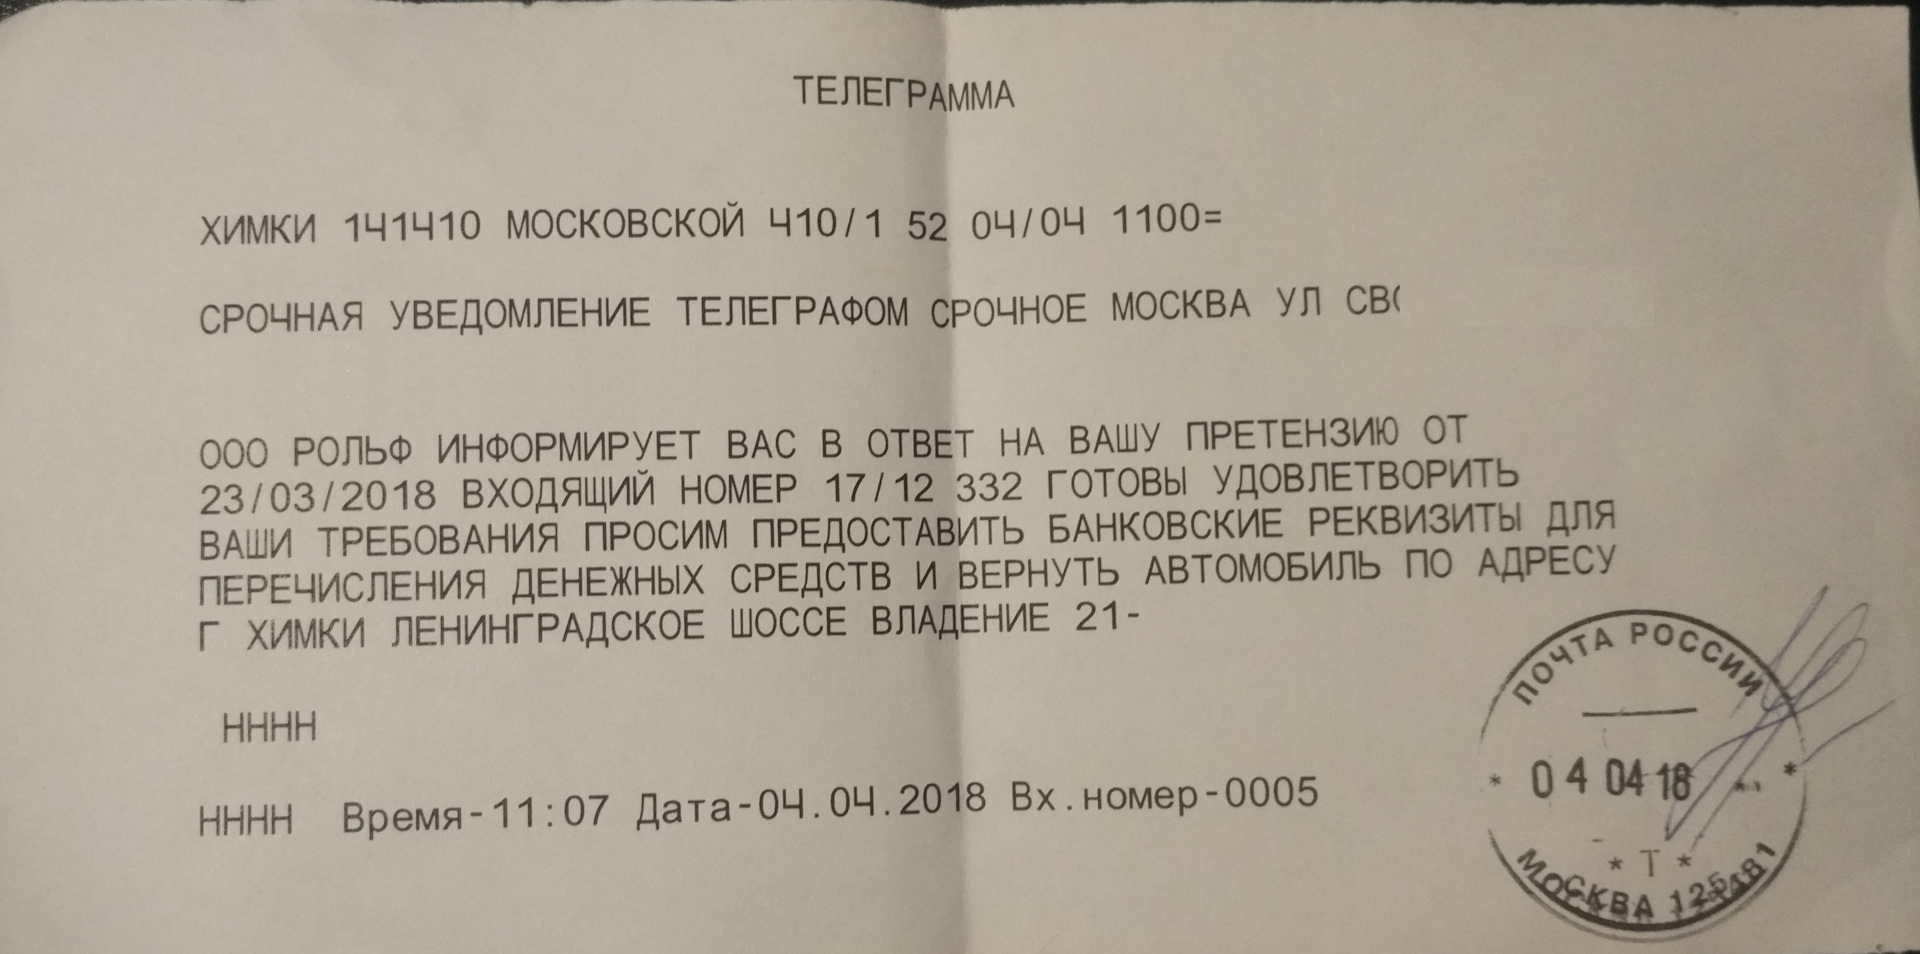 Как перевести телеграмму на русский фото 106